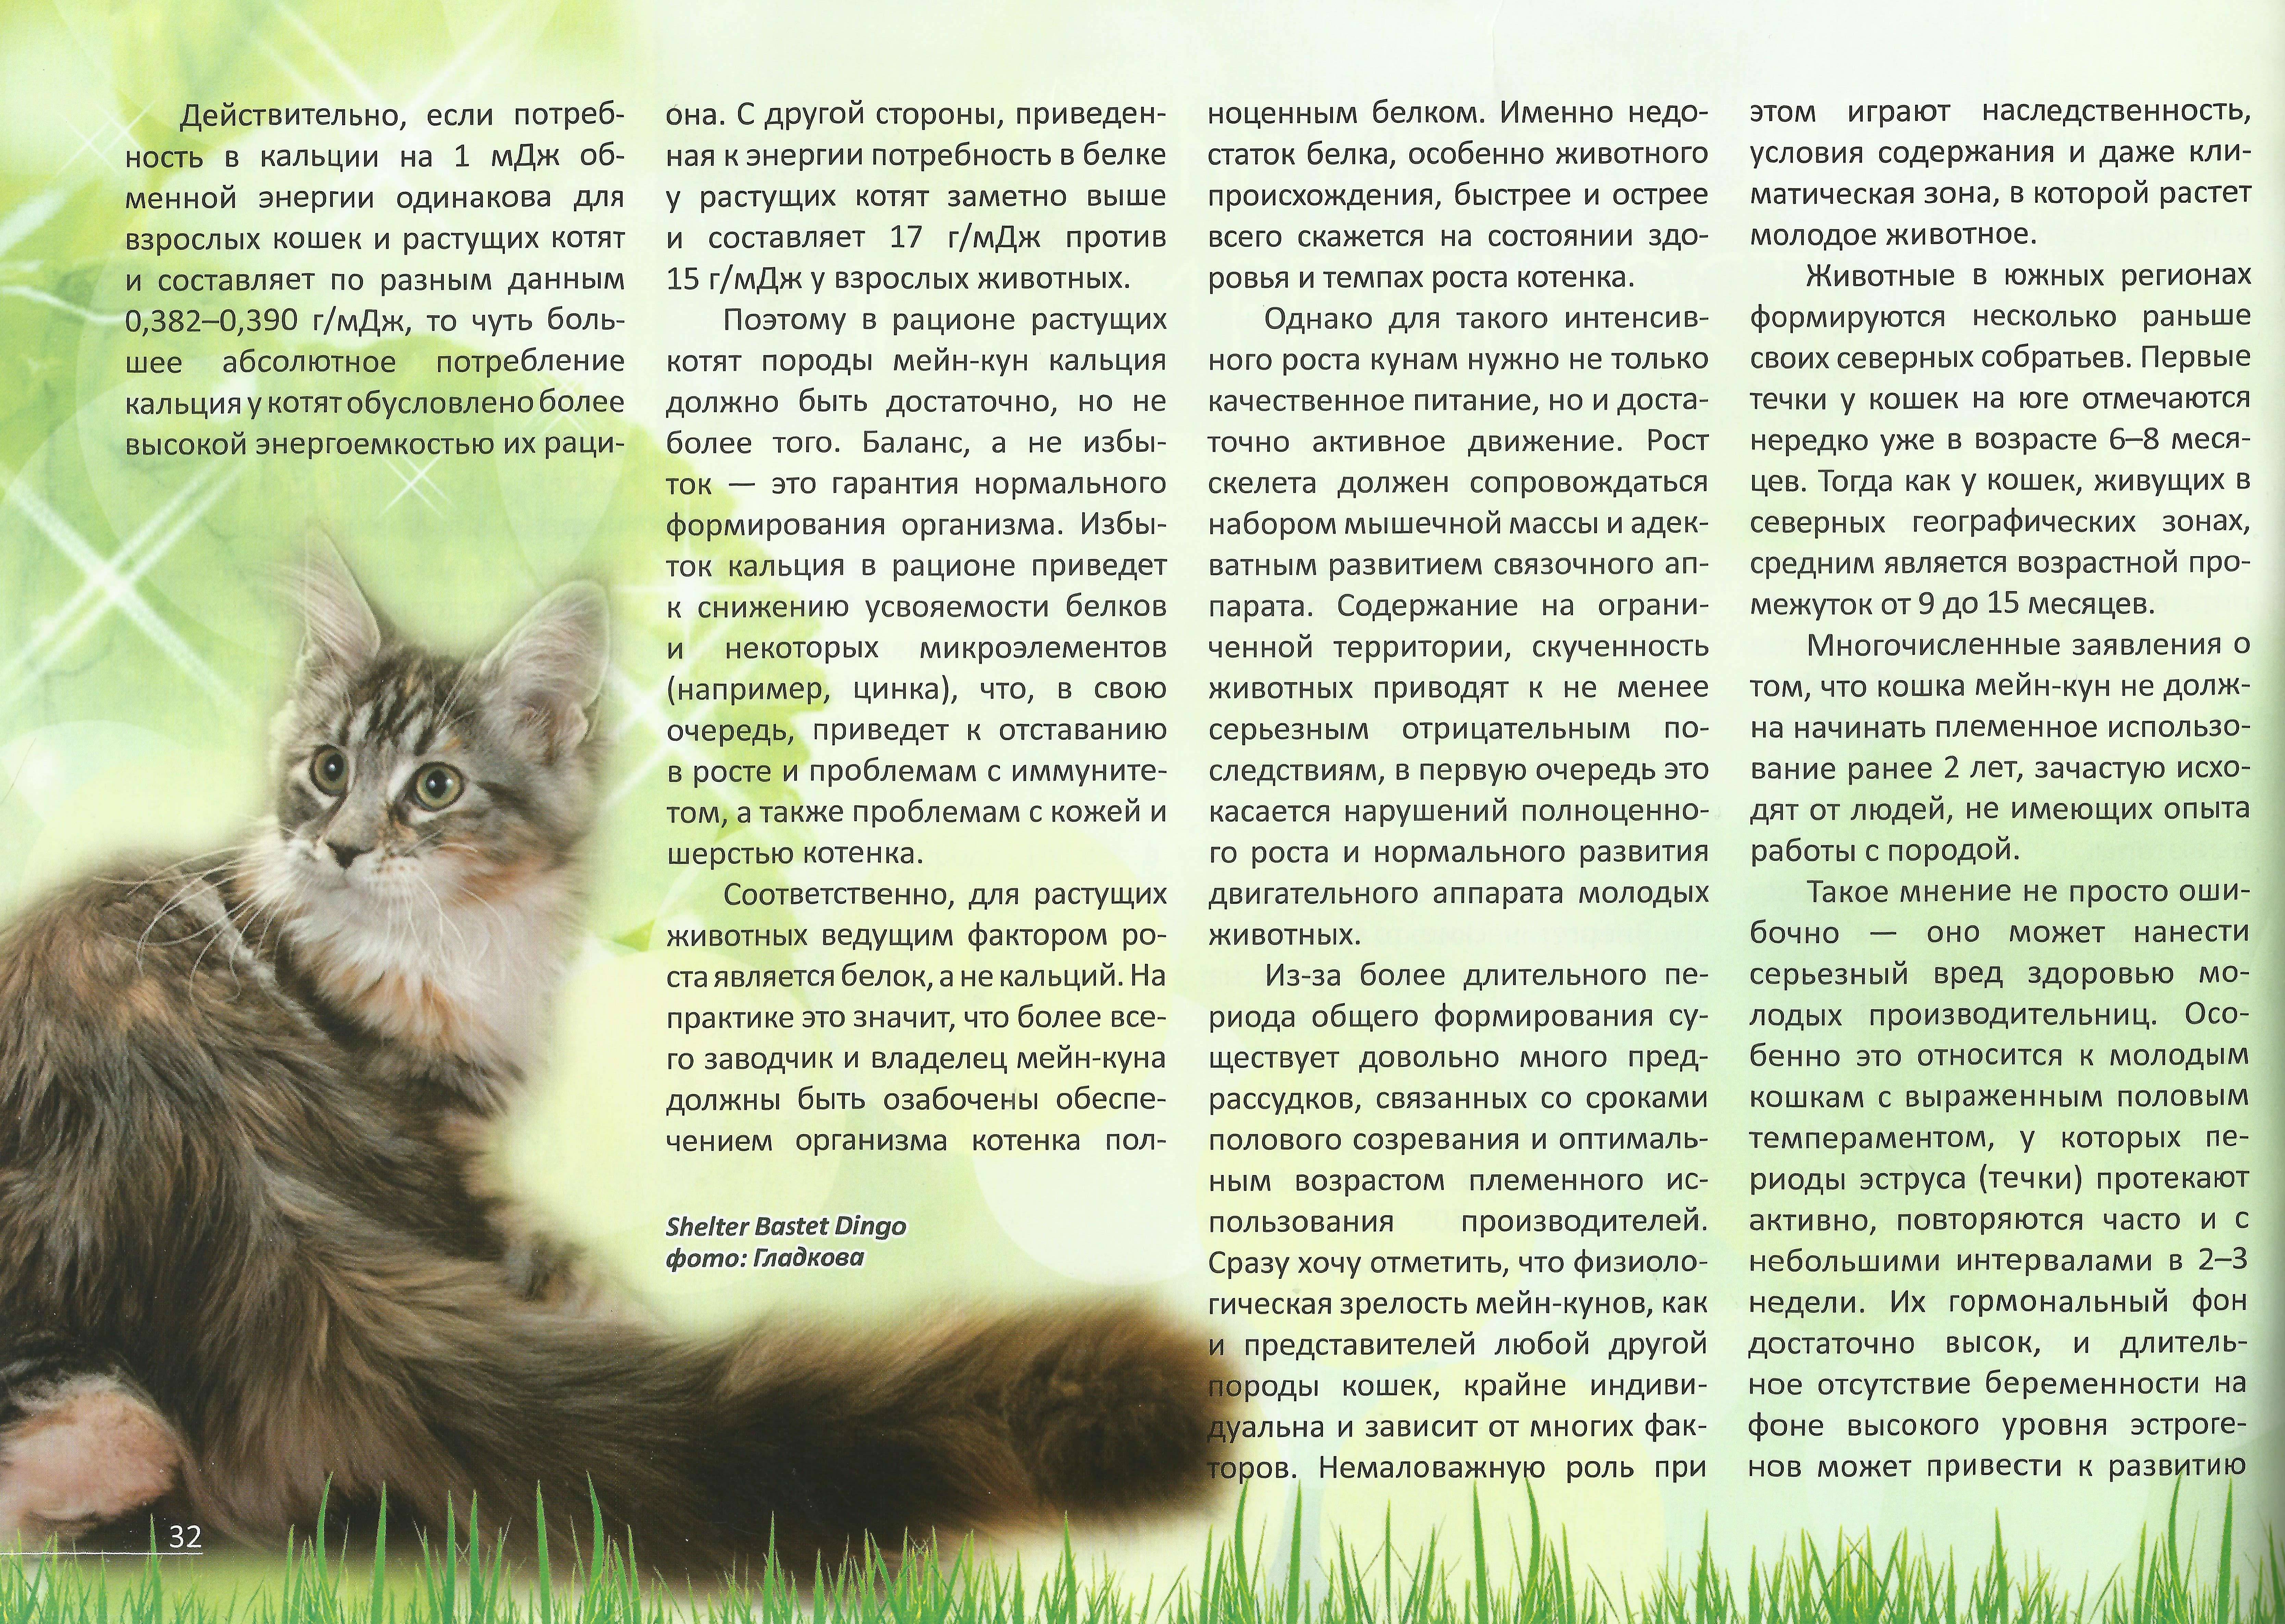 Мейн-кун: описание породы, характер кошек и котов, советы по содержанию и уходу, фото мэйкуна